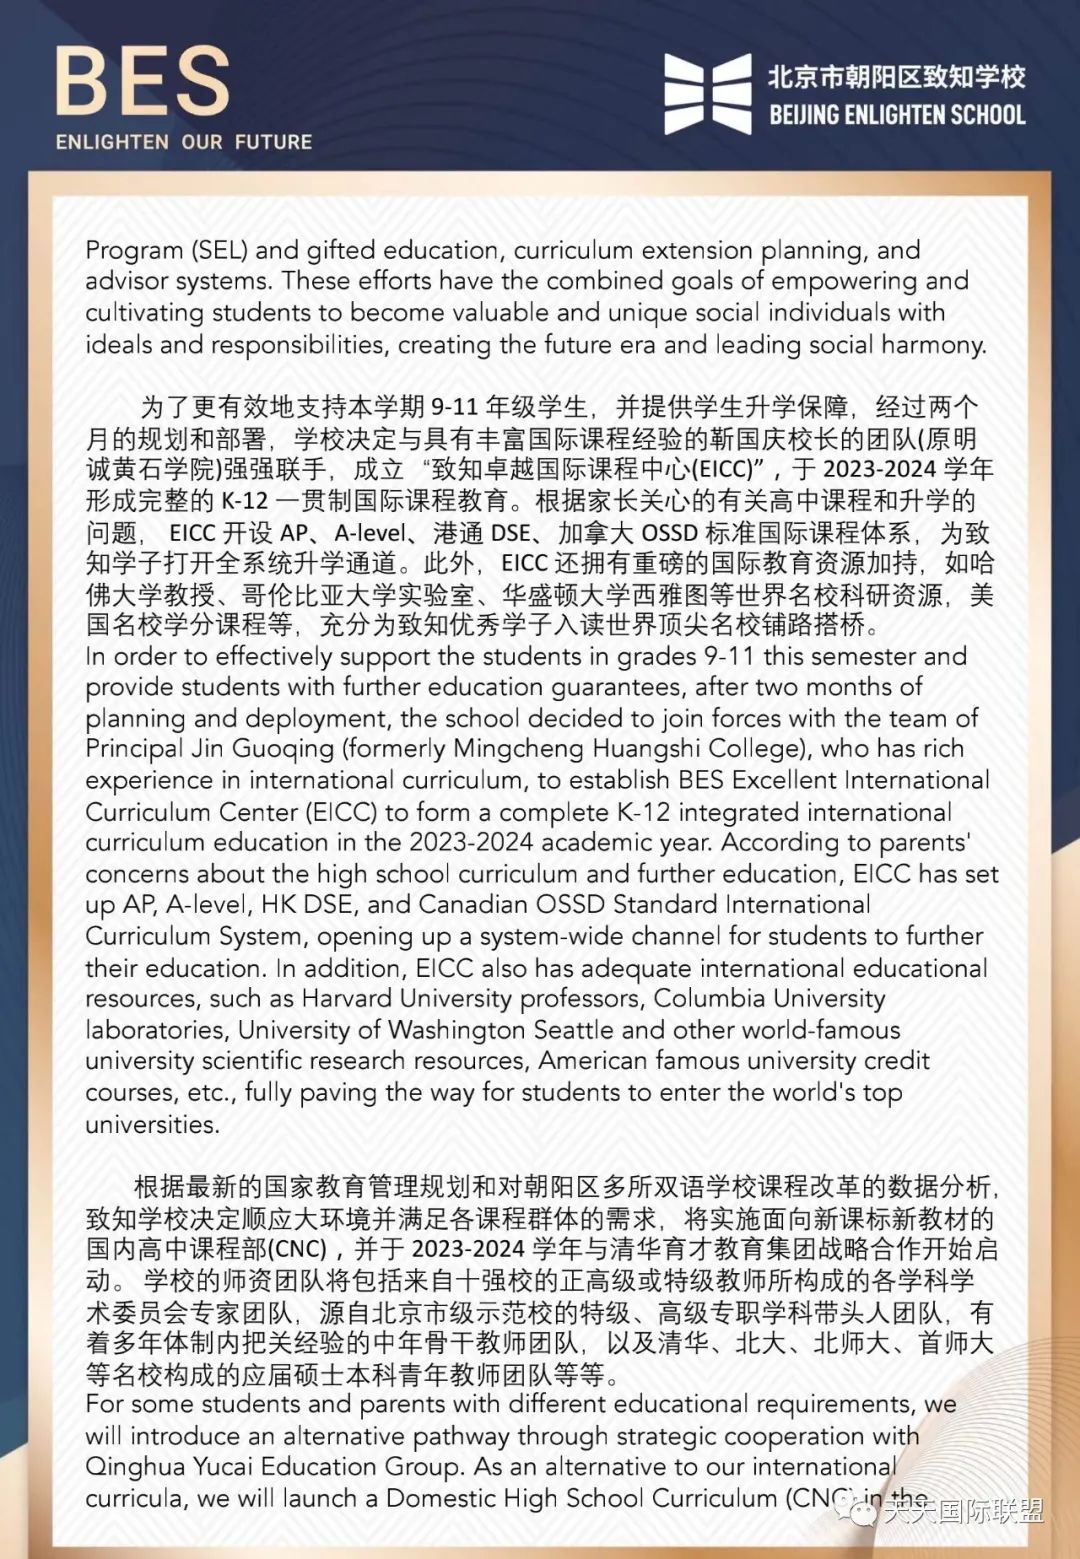 致北京致知学校社区成员的一封信